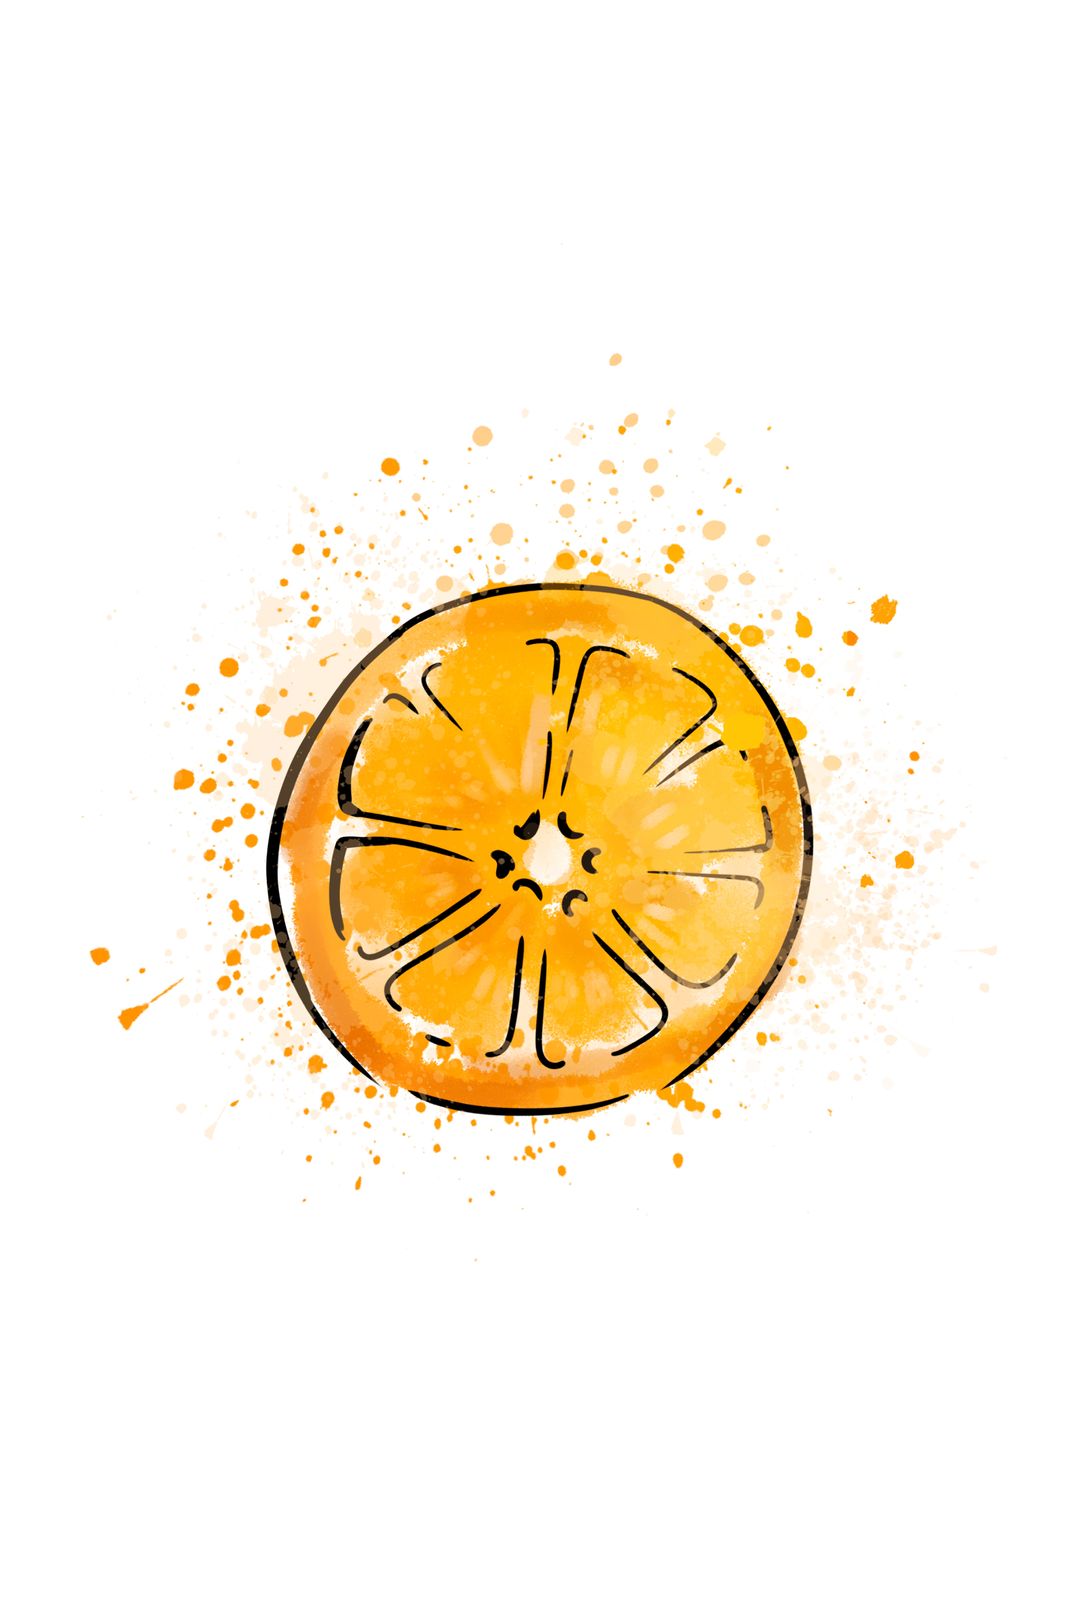 橙子插画图片壁纸